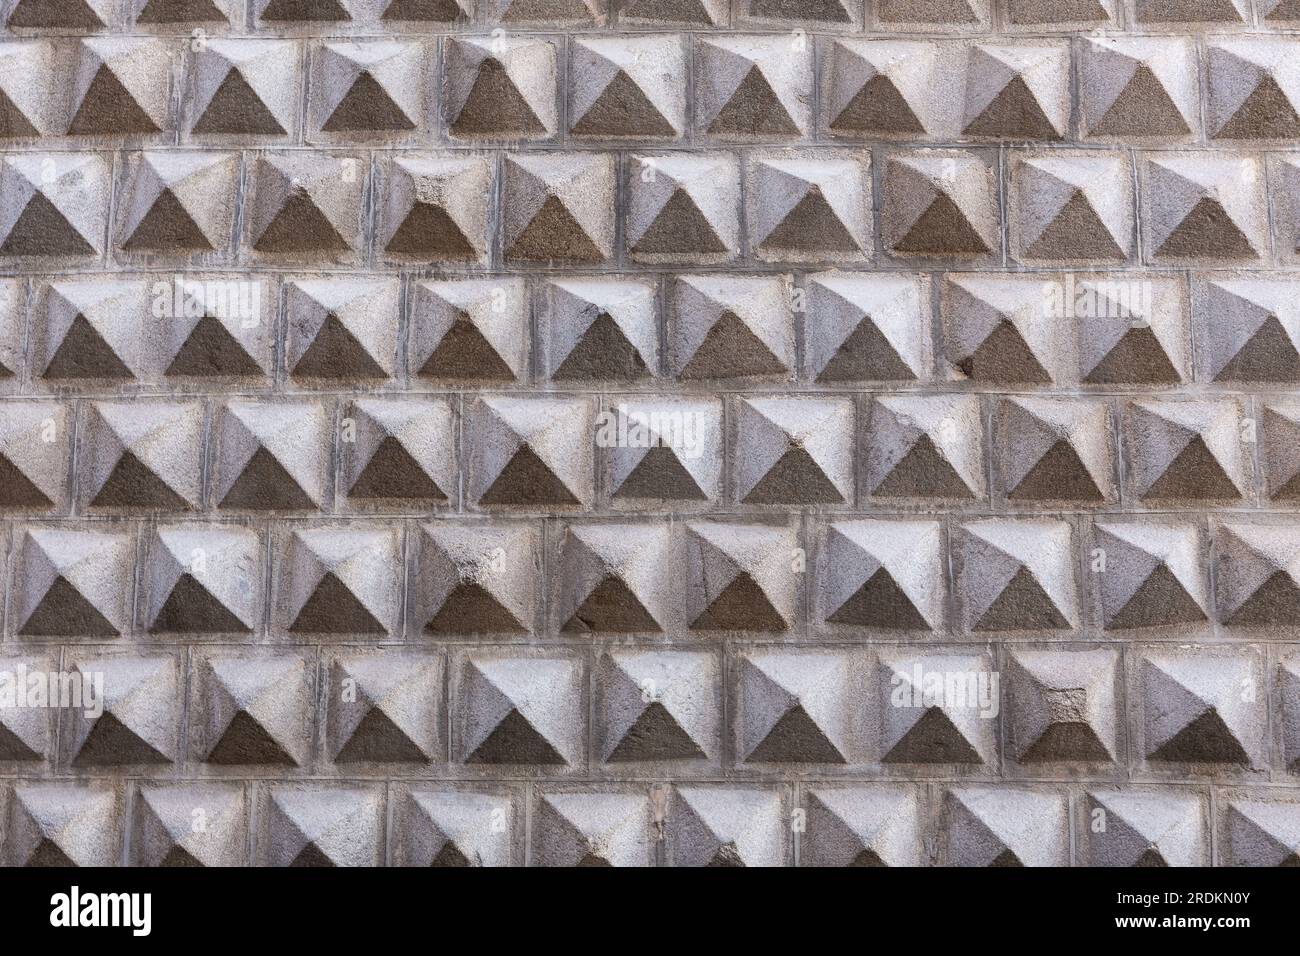 Geometrische Fassade der Casa de los Picos, historisches Renaissance-Gebäude in Segovia, Spanien, mit charakteristischer Fassade aus geschnitzten Granitblöcken. Stockfoto